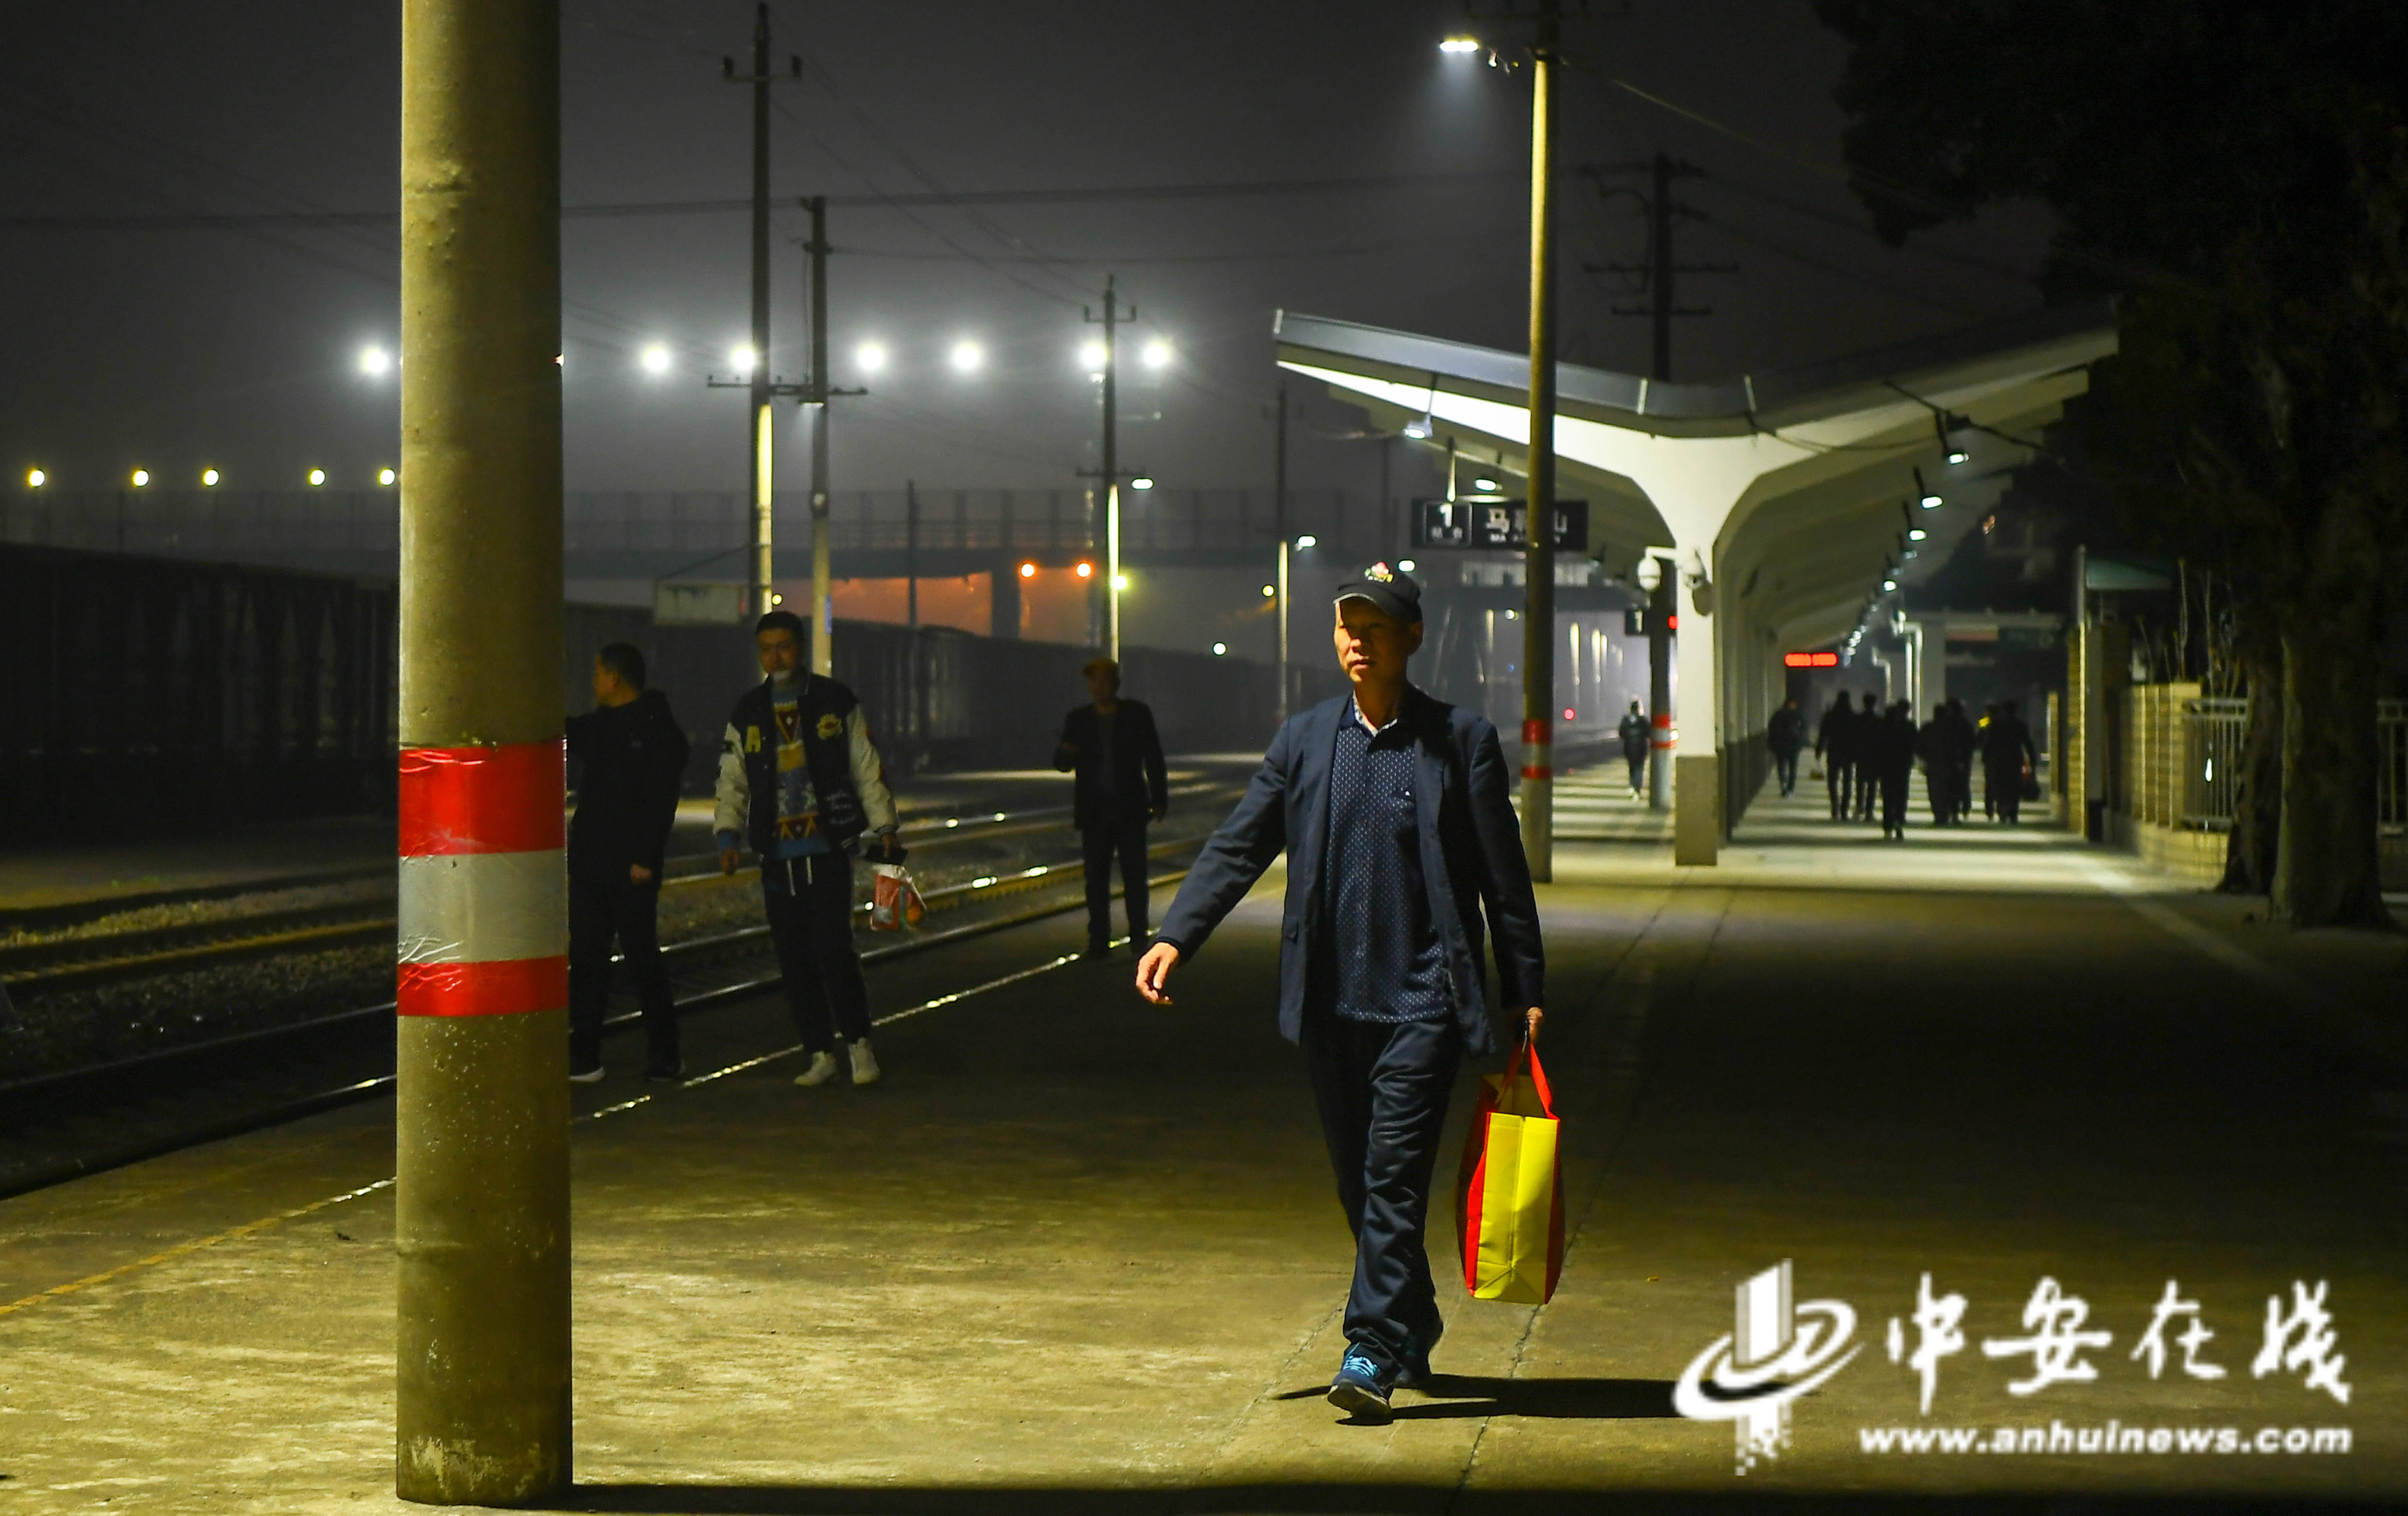 12 晚上七点，何金瑞走在车站站台道路上，今天他将开启一夜的扳道工作.JPG